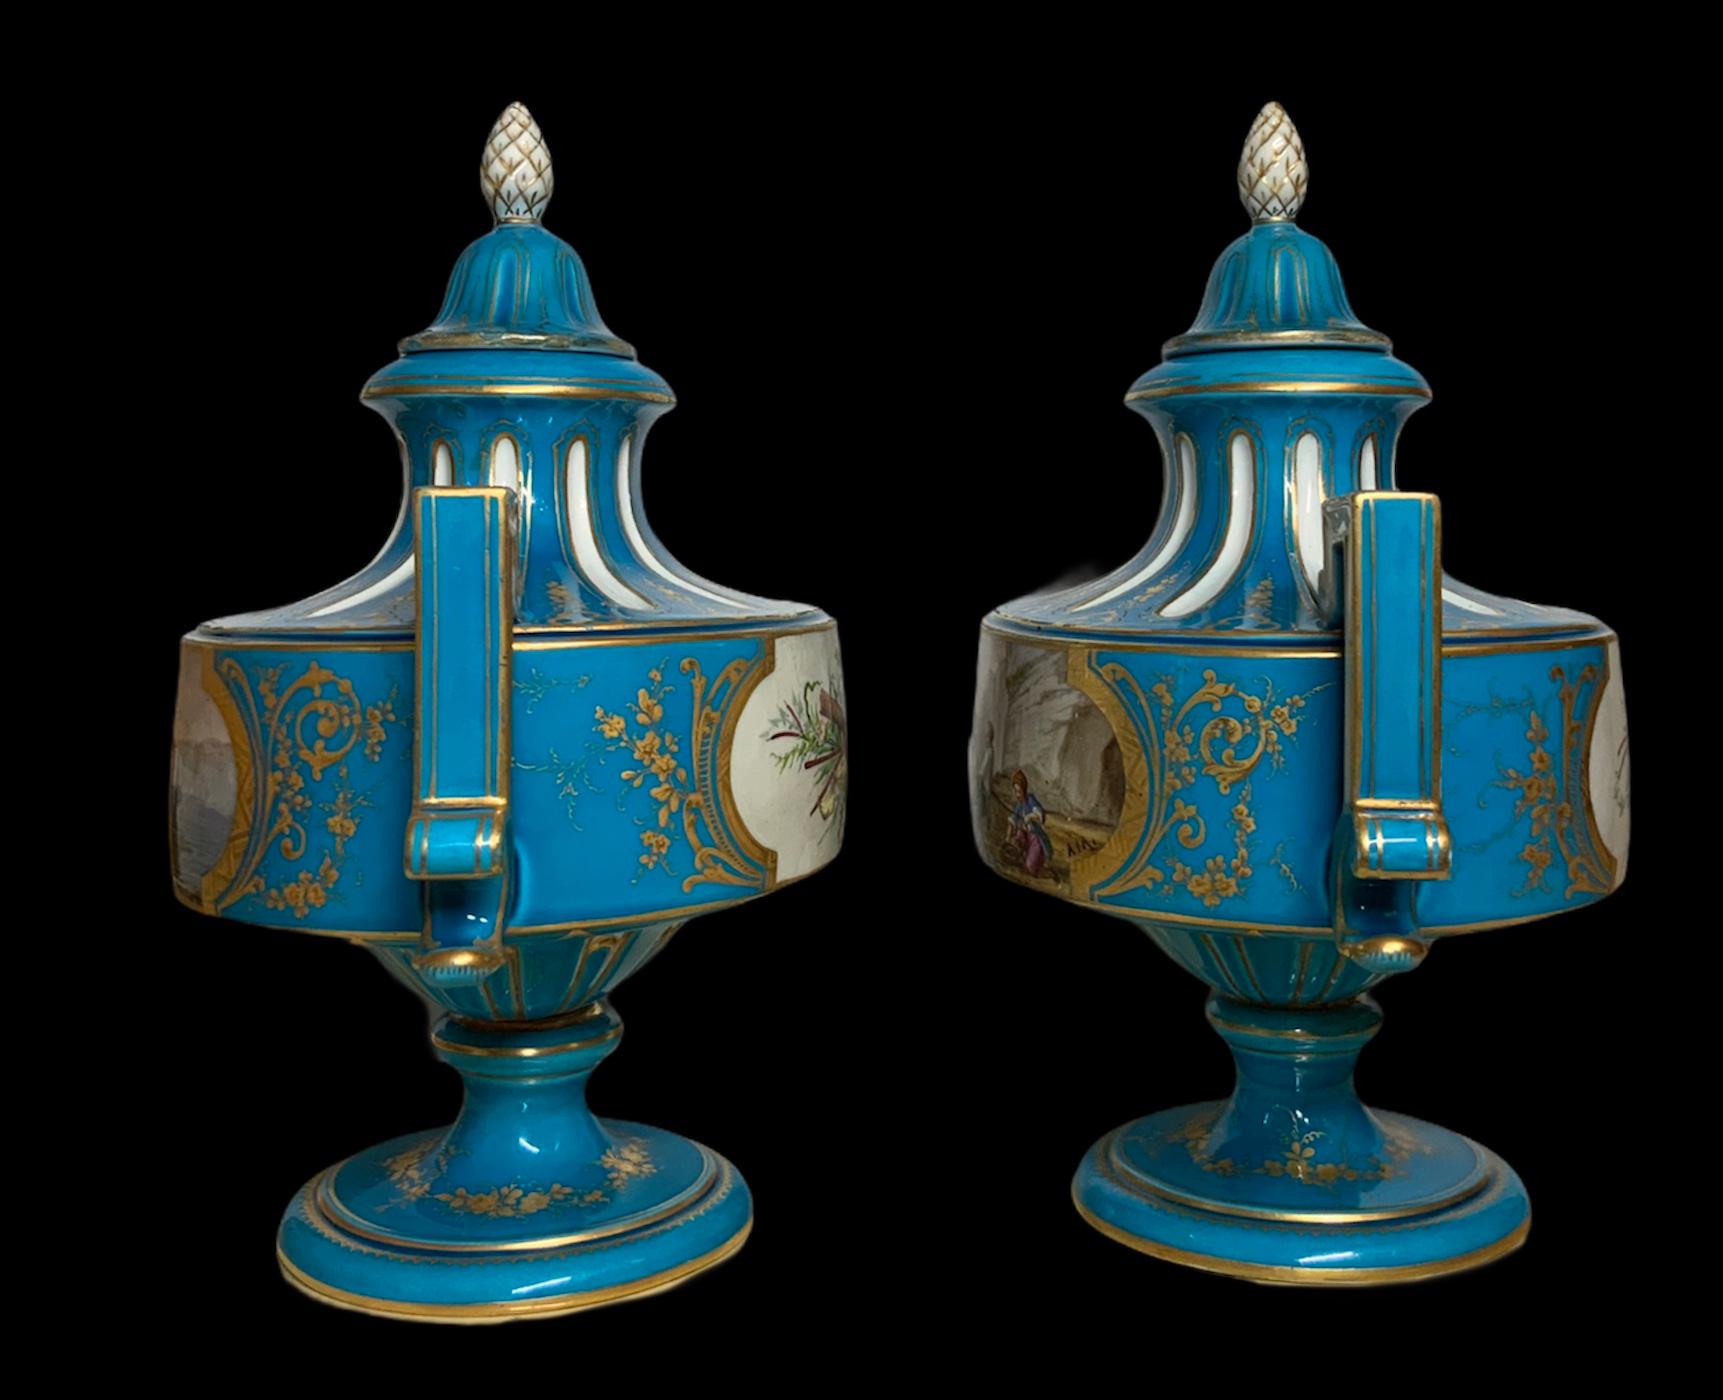 Il s'agit d'une paire d'urnes à couvercle turquoise en porcelaine peinte à la main de Sèvres. Tous deux représentent sur le devant des scènes de pêcheurs en bord de mer. Dans l'une, un groupe de pêcheurs prépare un voilier et dans l'autre, ils